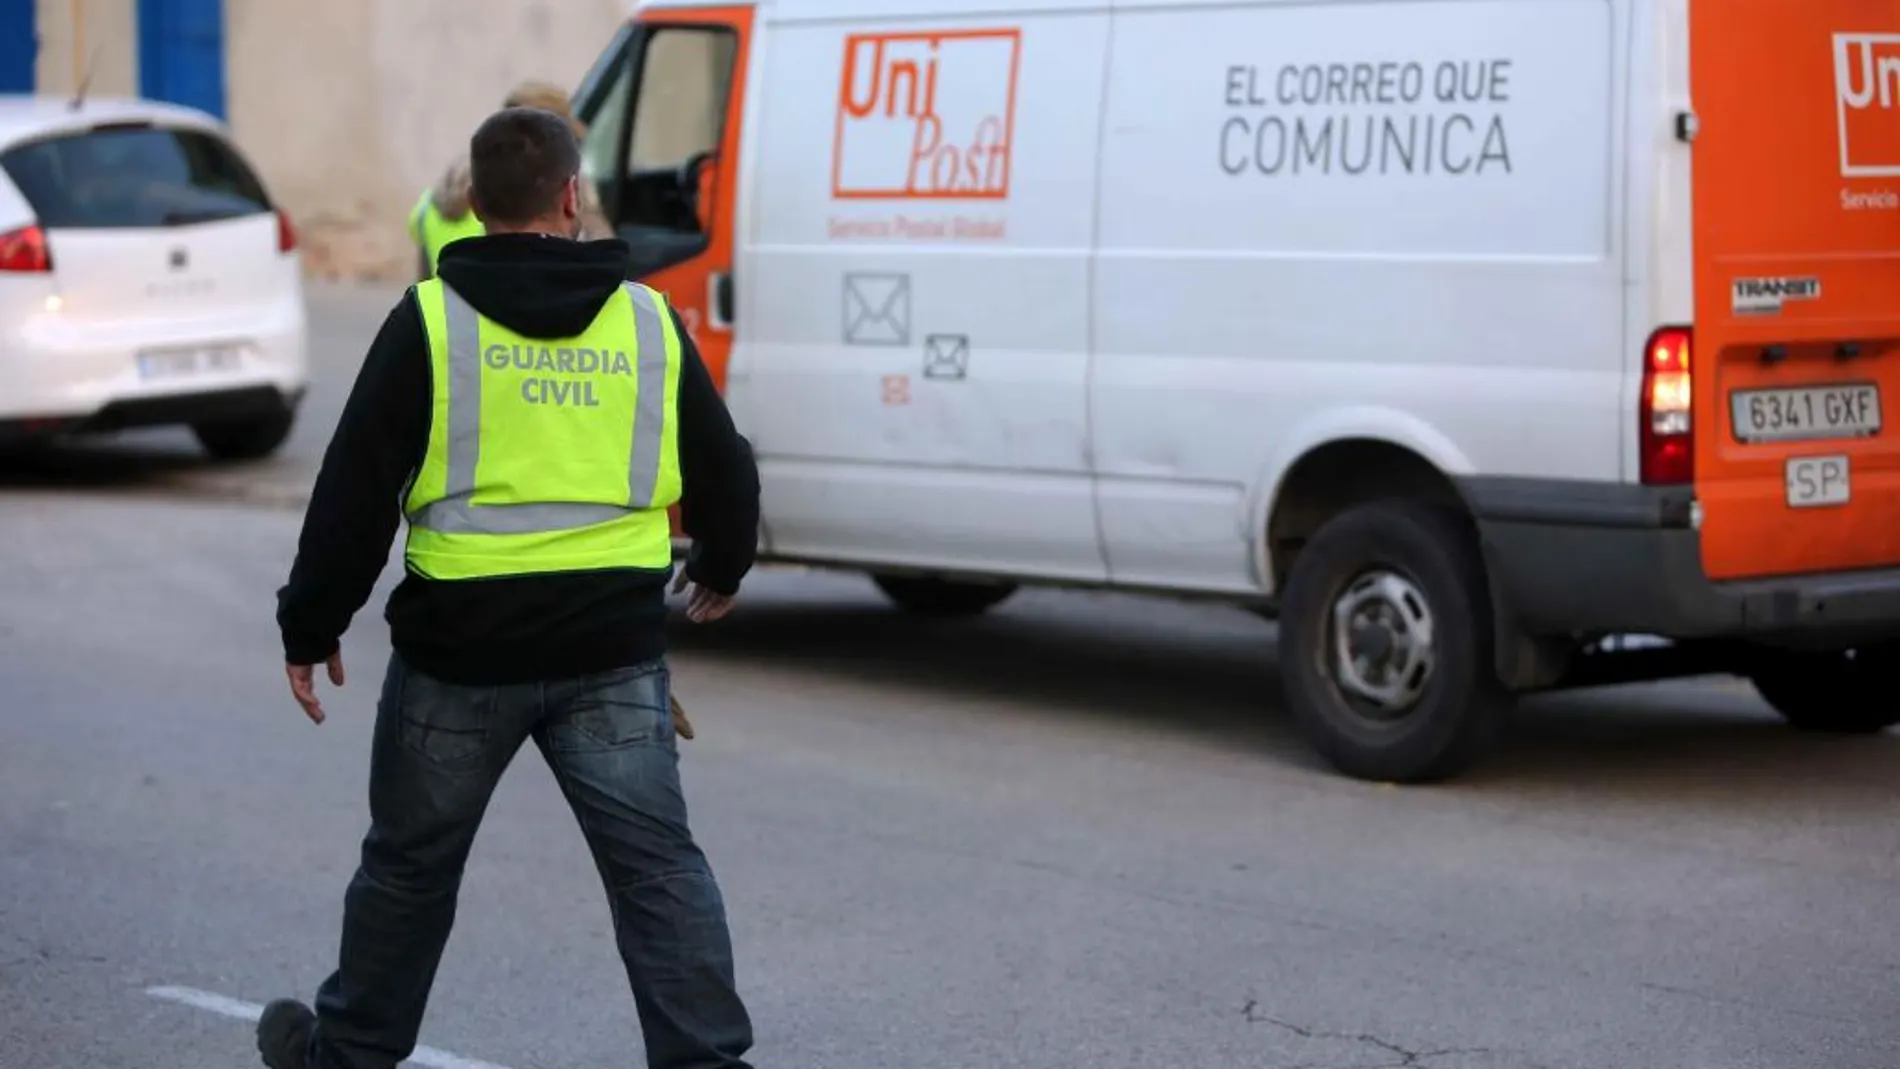 La Guardia Civil registró durante cerca de 5 horas las instalaciones de Unipost en L'Hospitalet de Llobregat